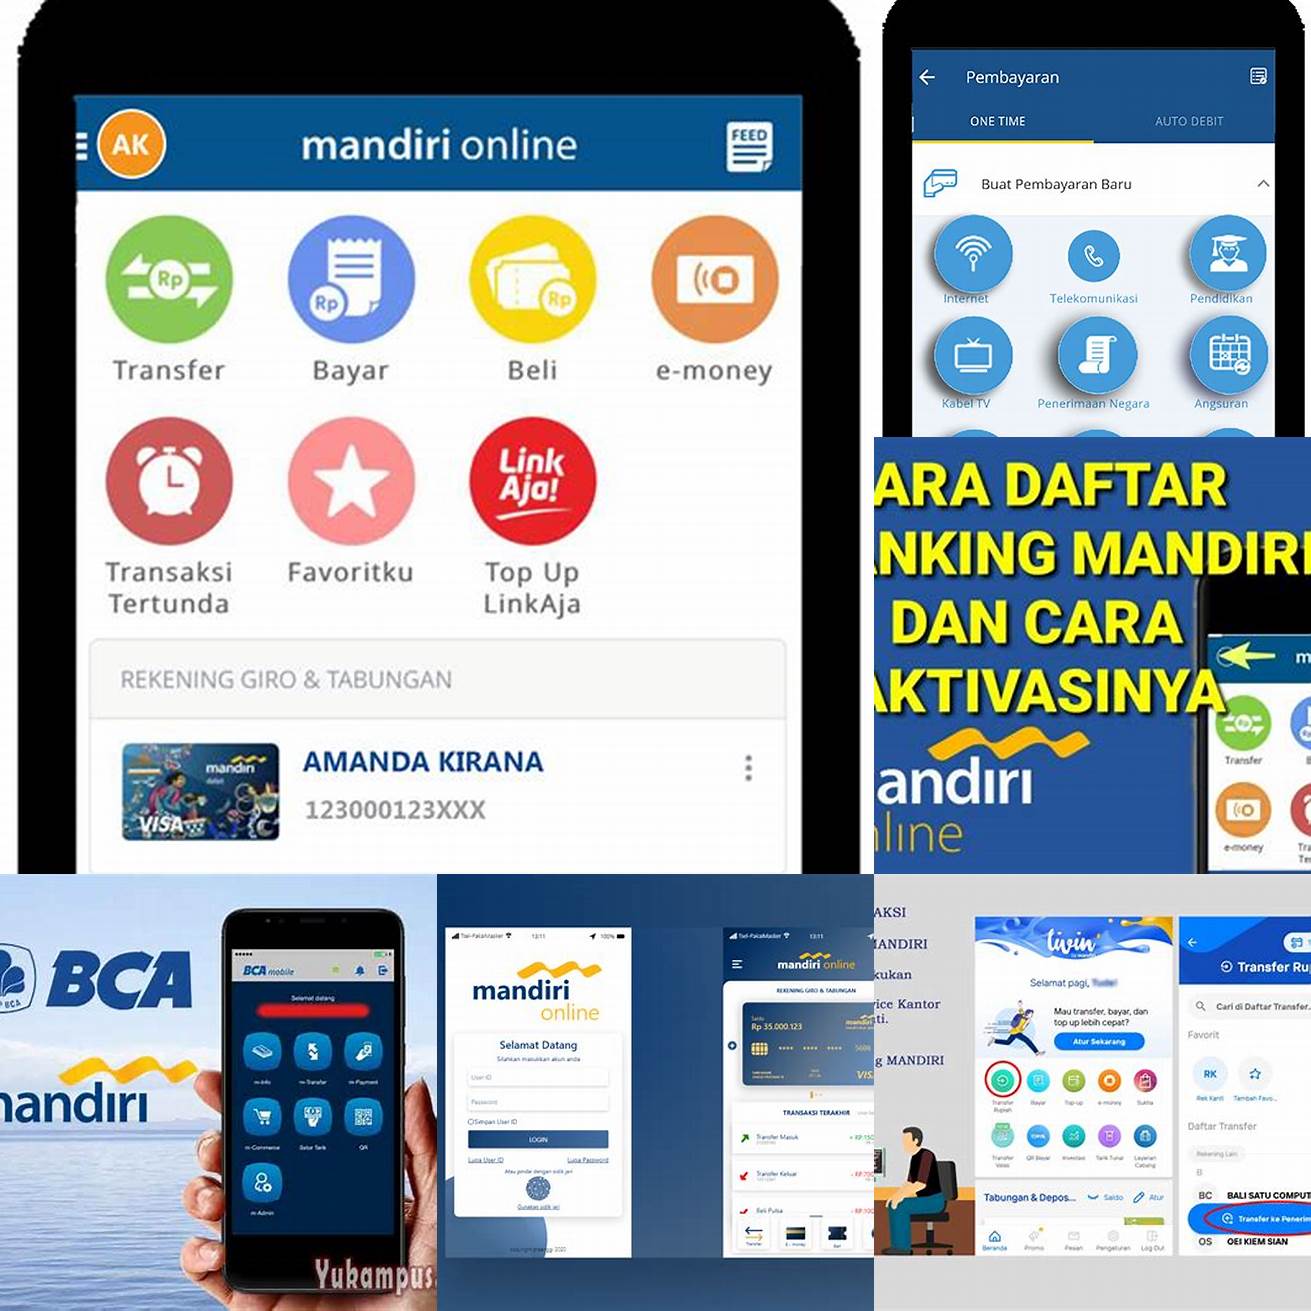 Langkah pertama buka aplikasi M Banking Mandiri di smartphone Anda